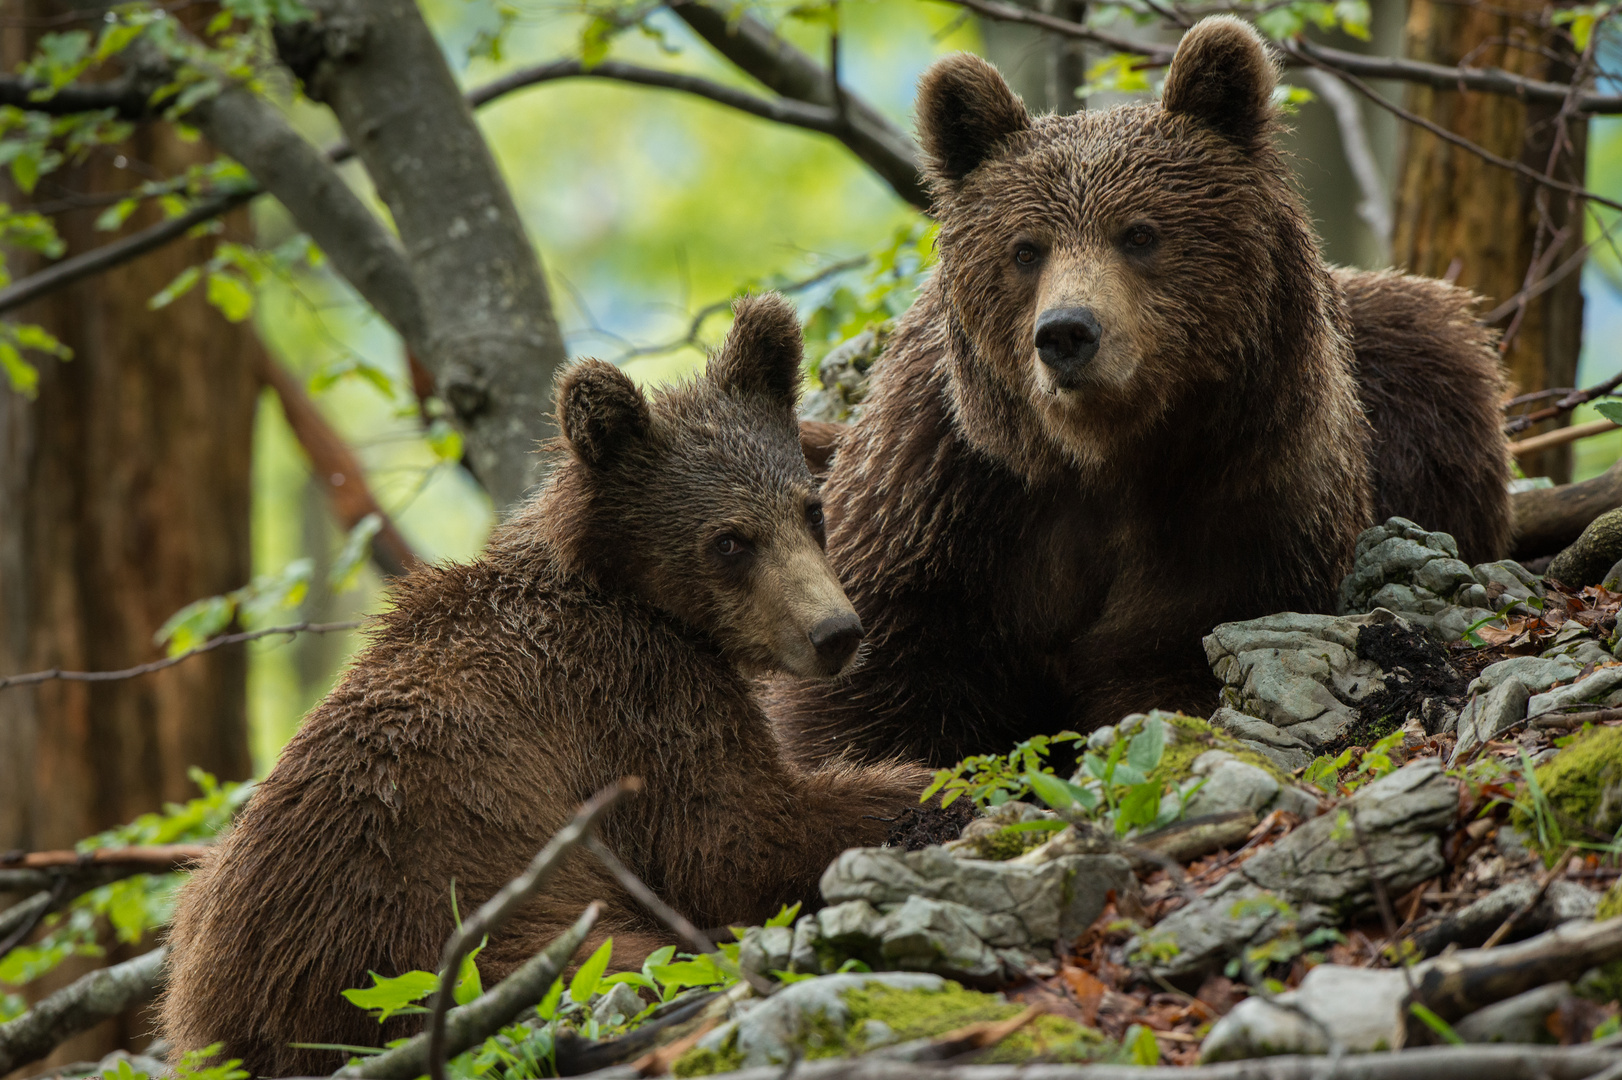 Mama bear with cub